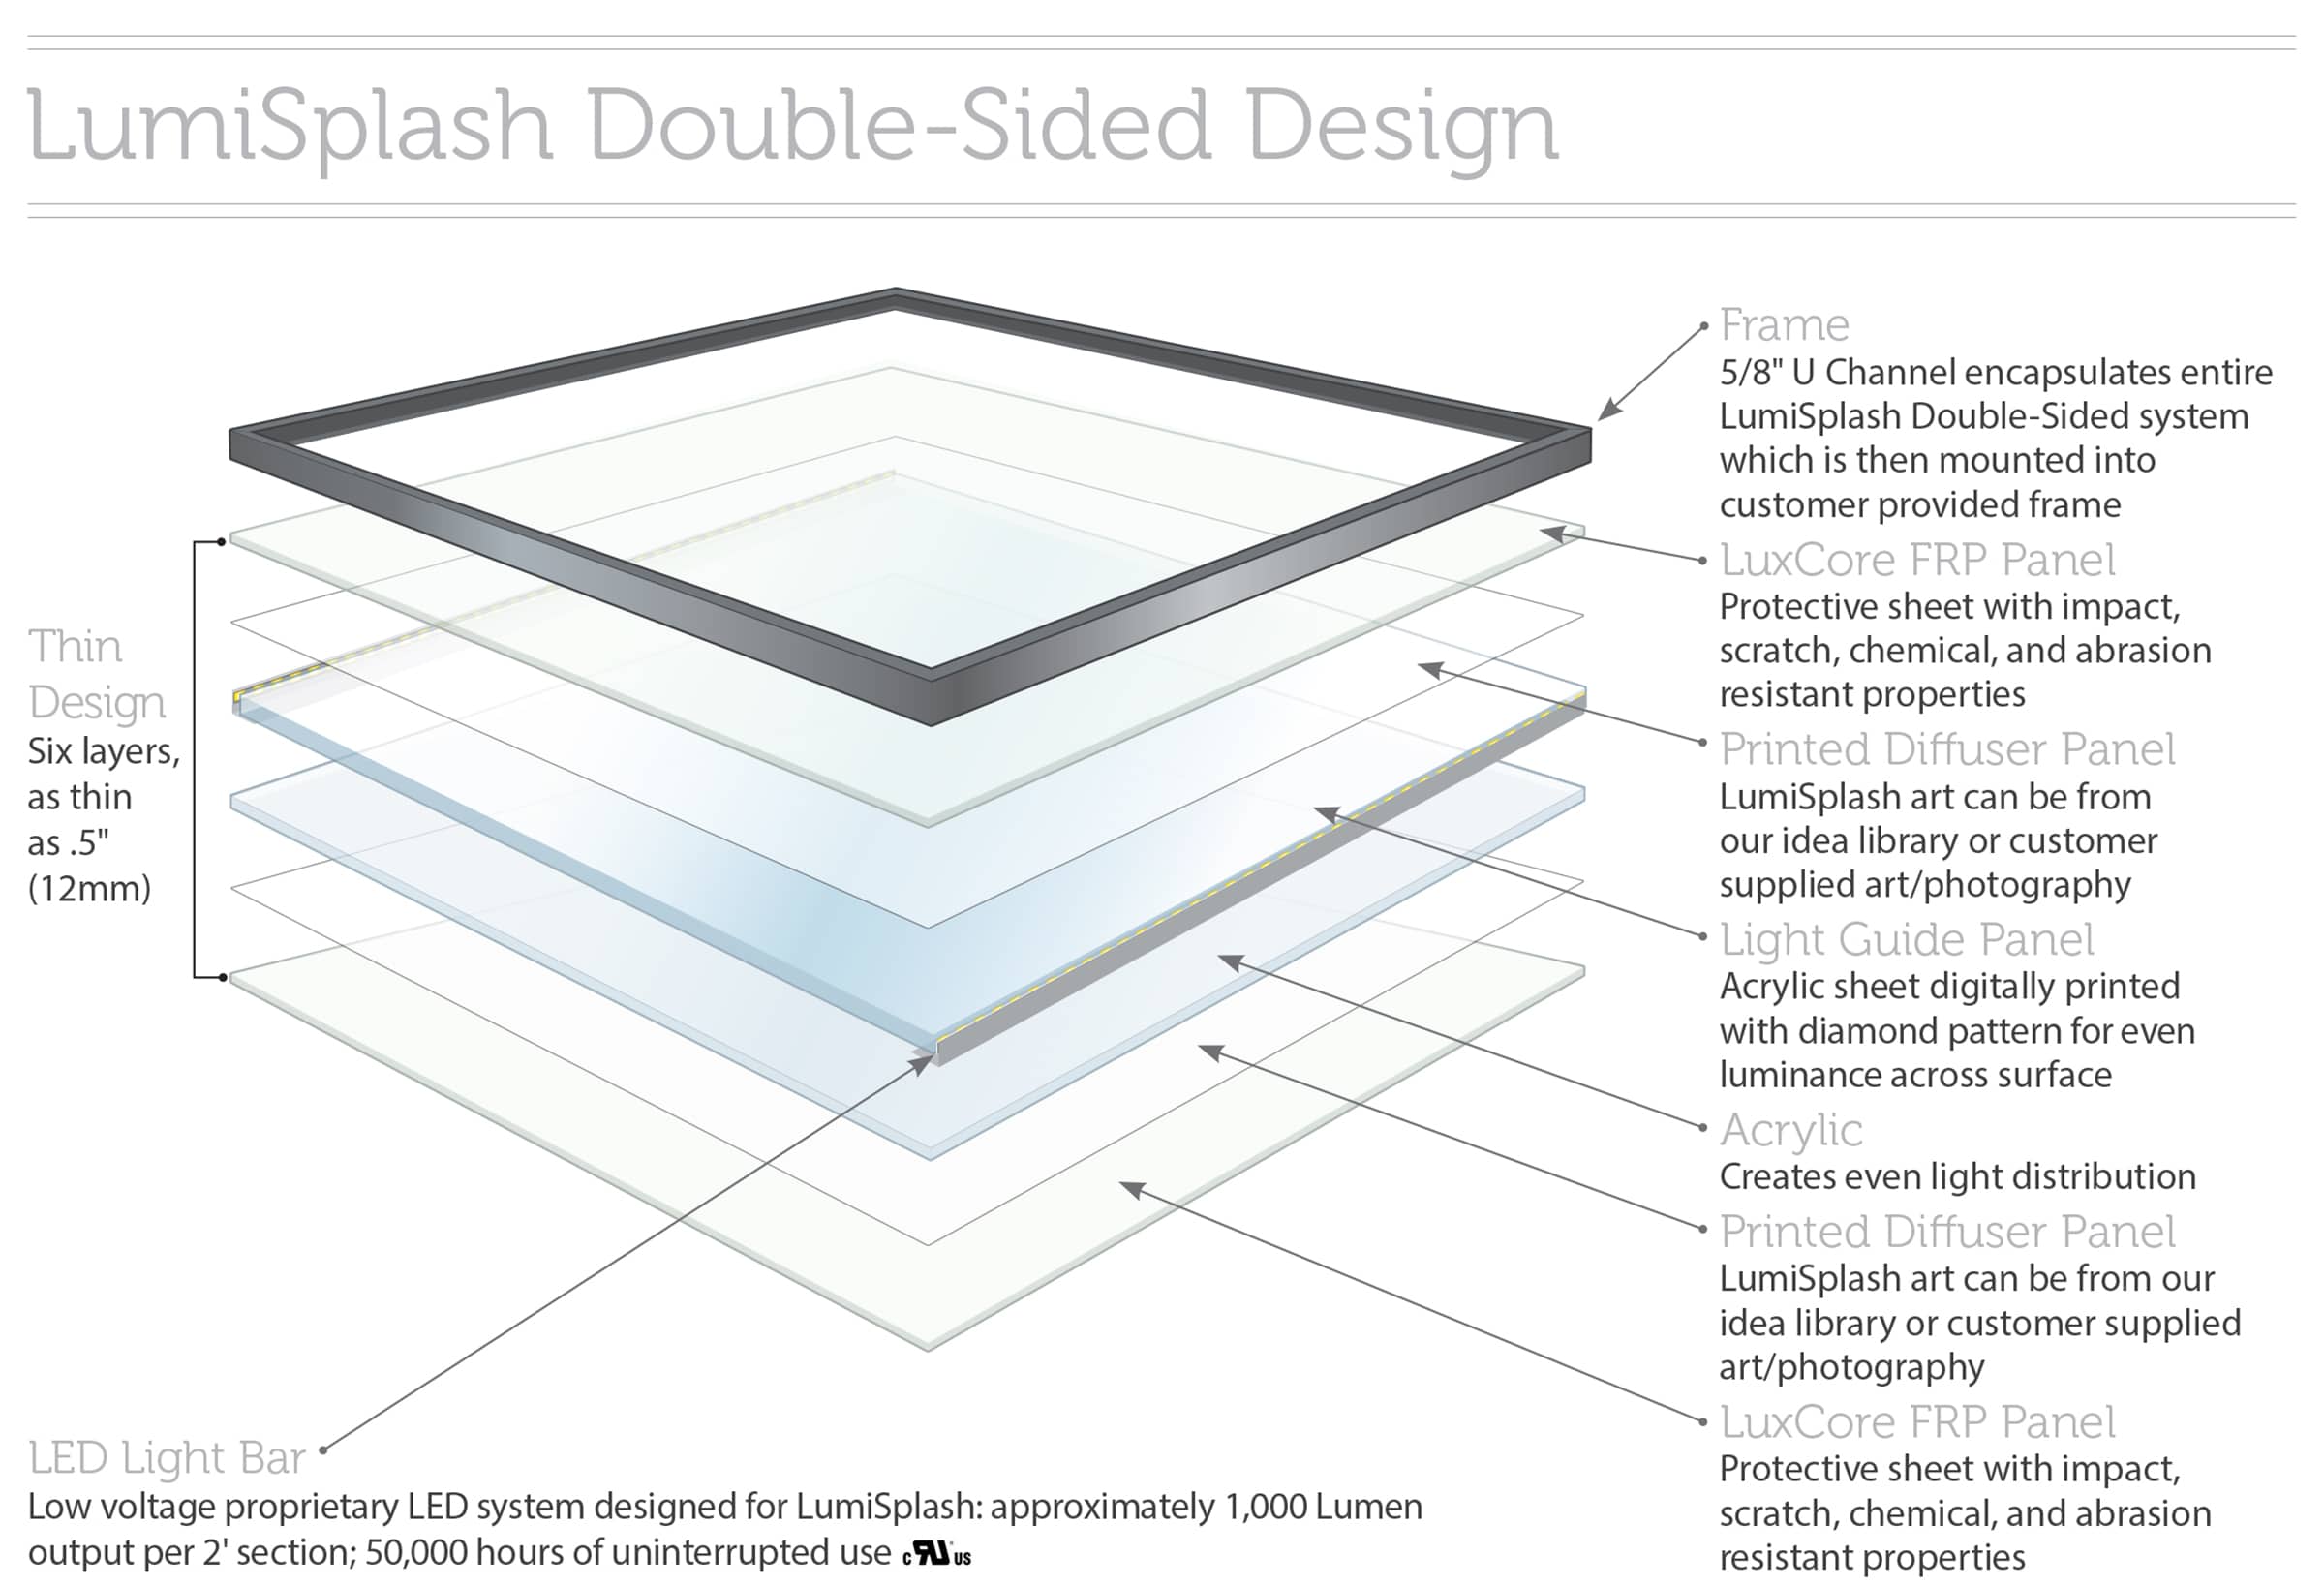 LumiSplash Double-Sided Design